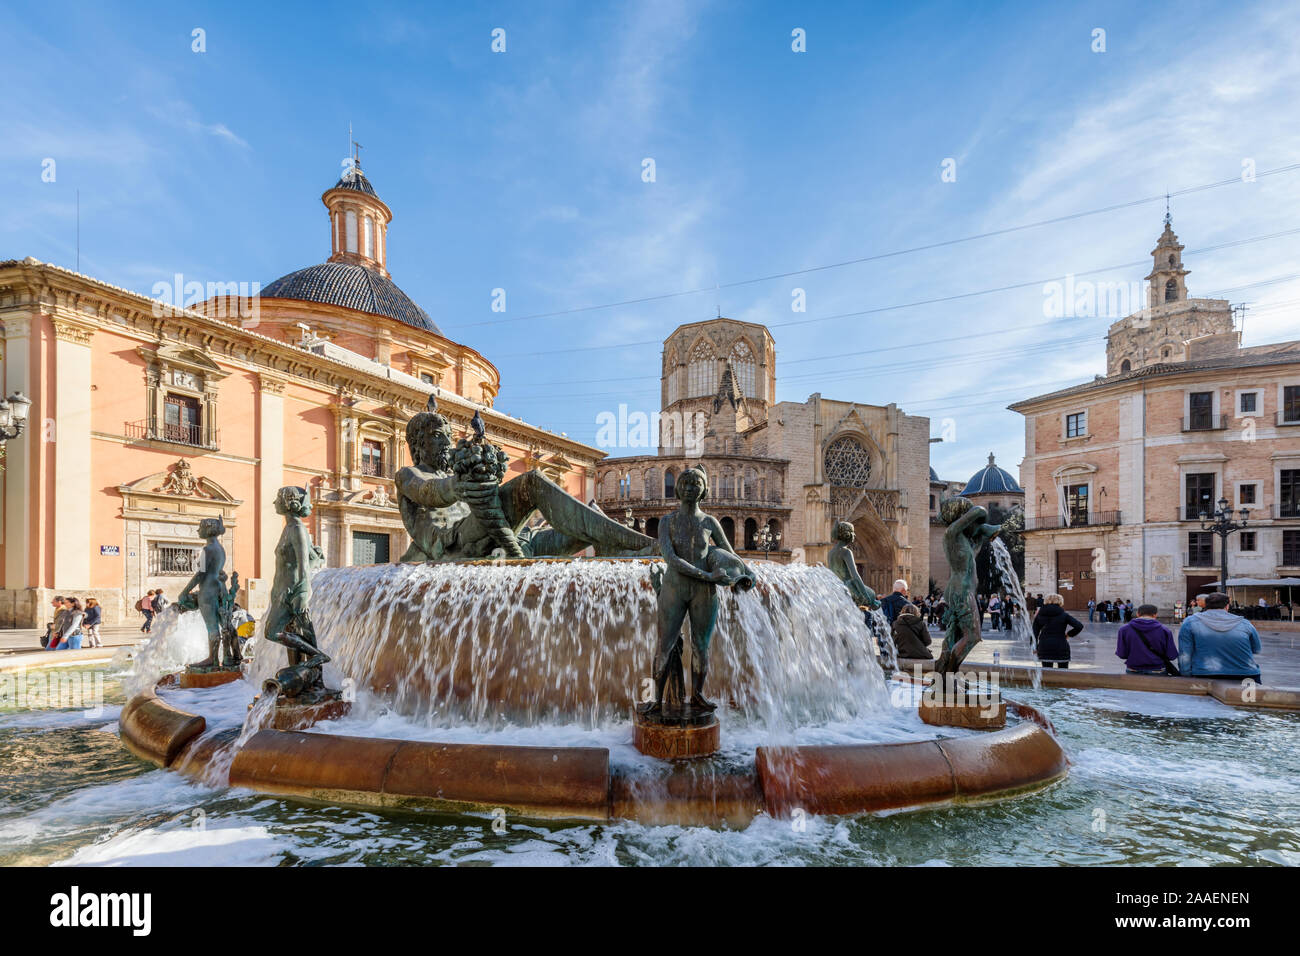 Rio Turia fontaine dans la Plaza de la Virgen, dans le centre de la vieille ville de Valence, en Espagne. Banque D'Images